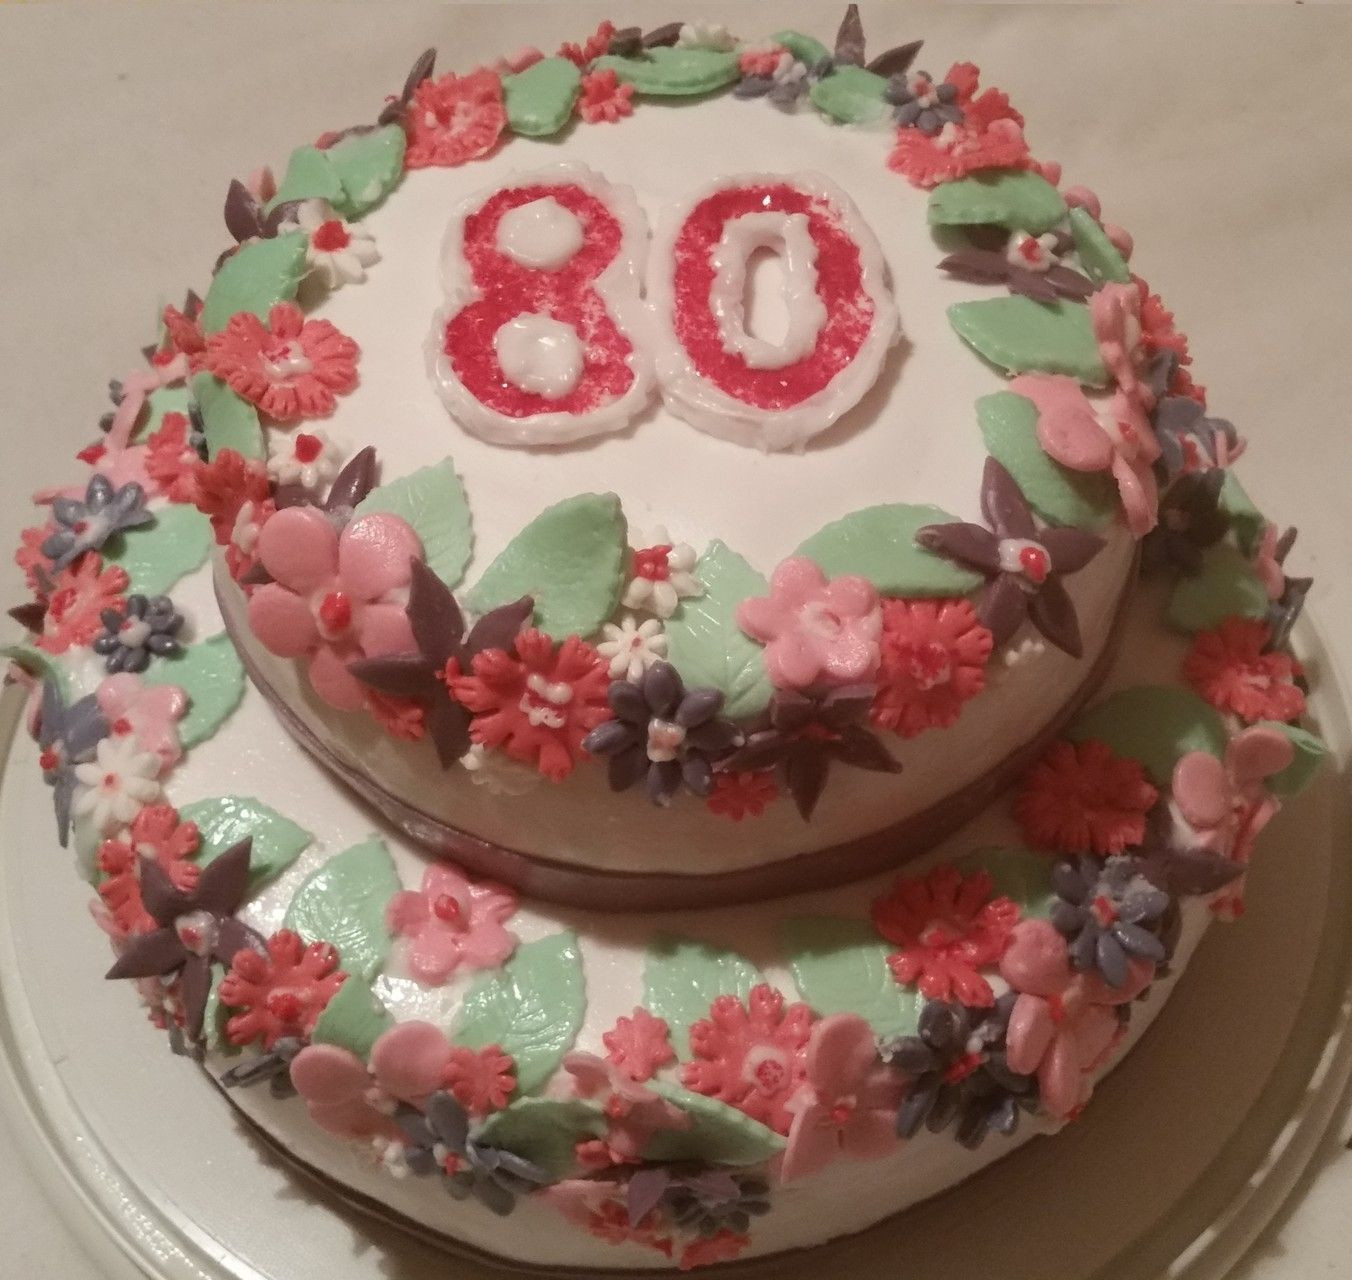 80 Geburtstag Blumen
 Torte mit Blumen zum 80 ten Geburtstag